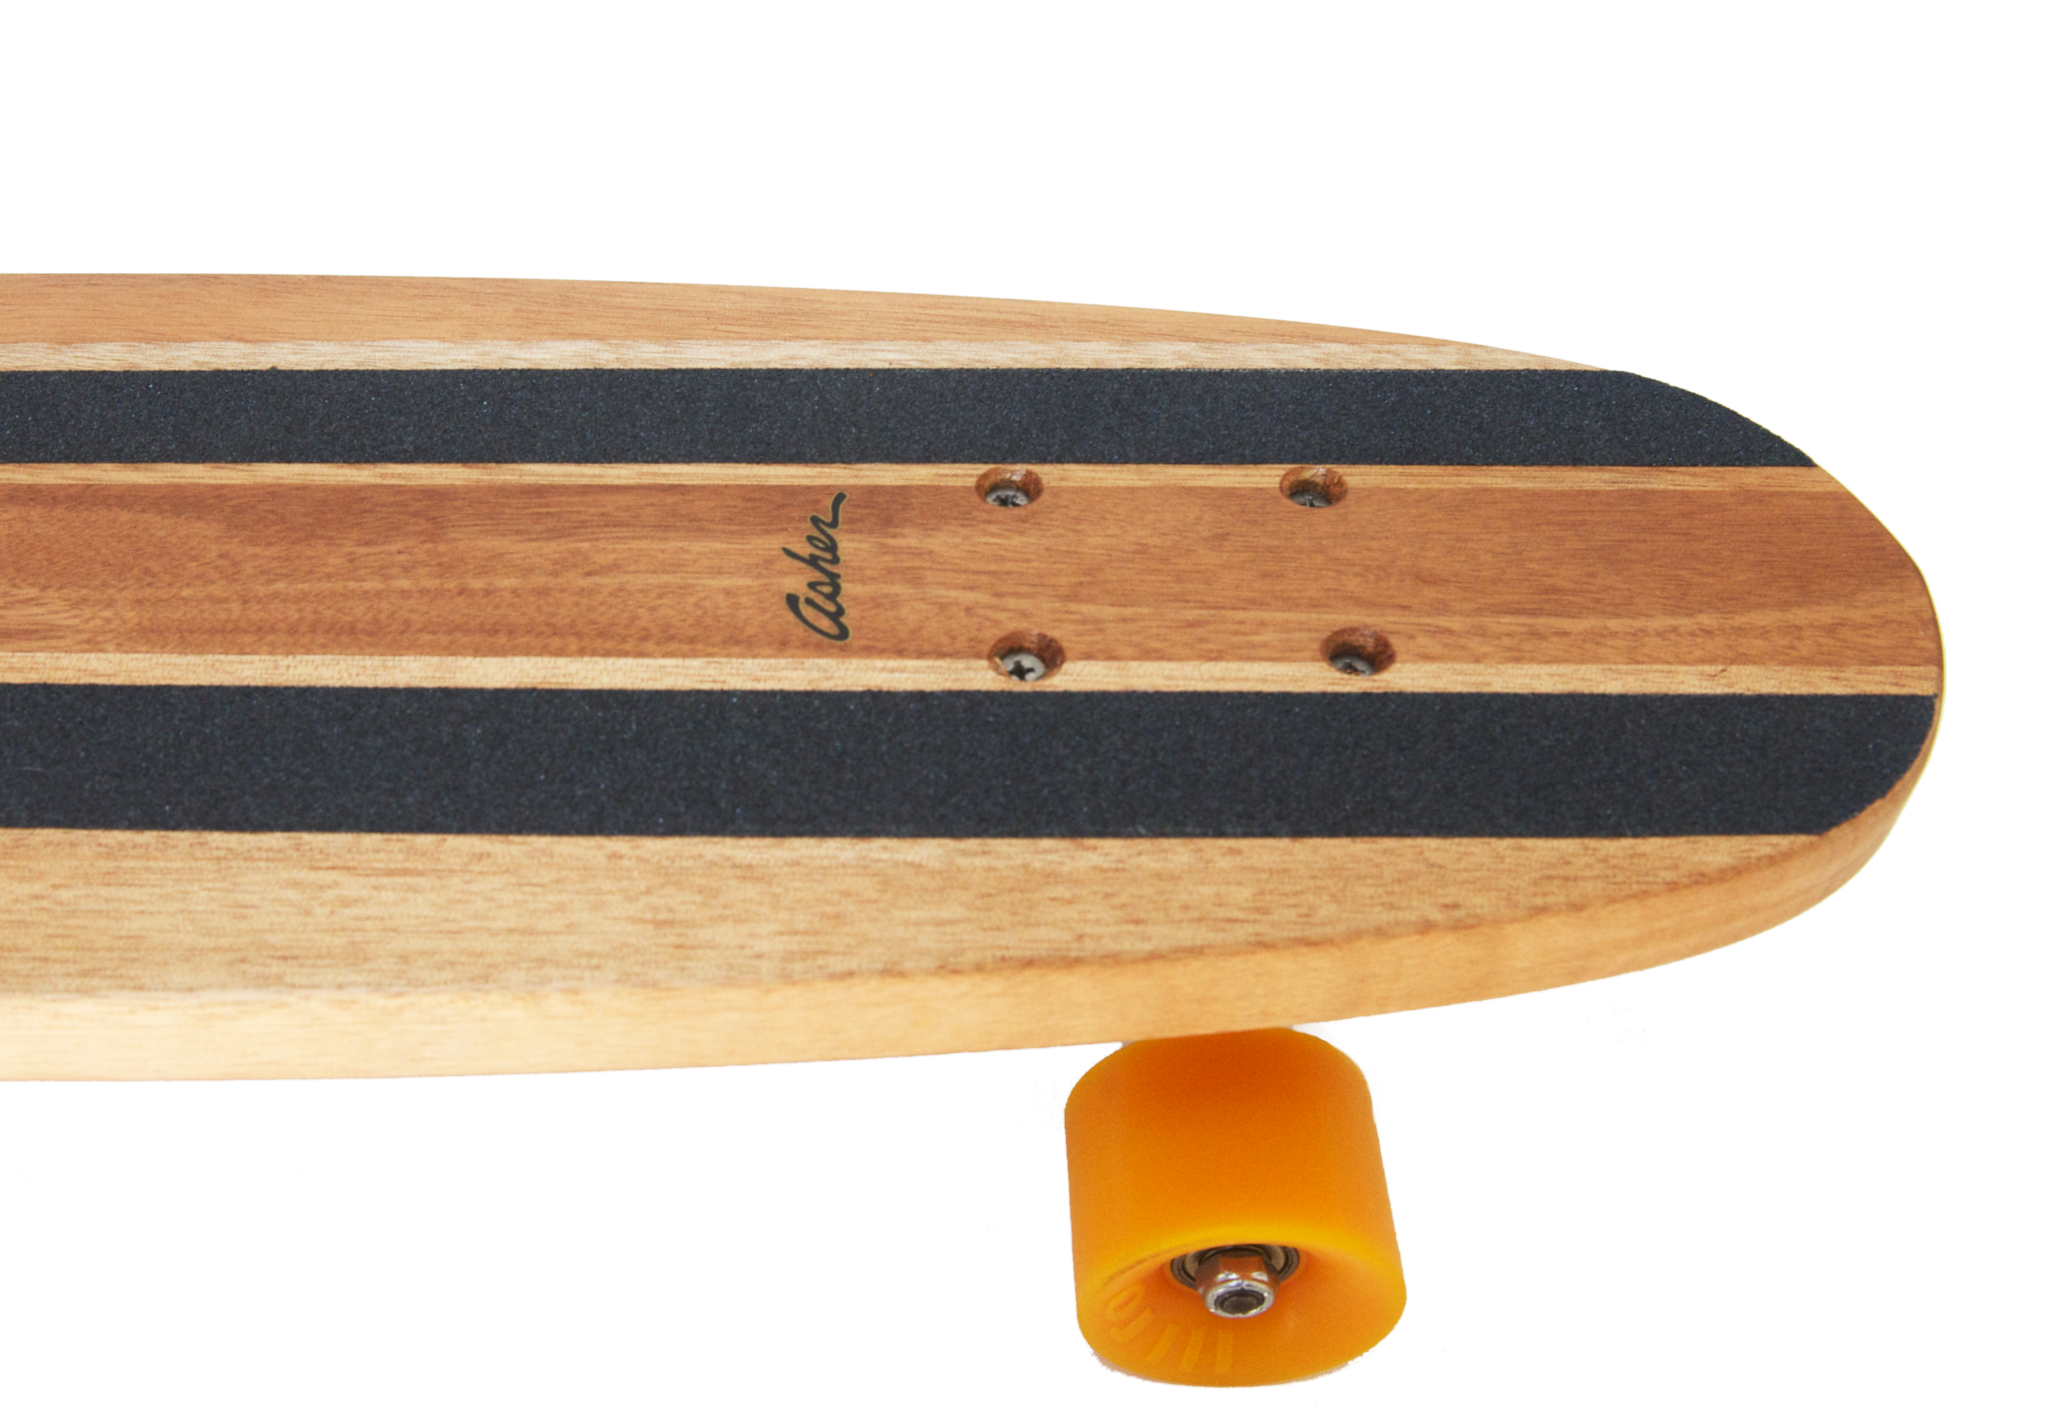 Skateboard PNG images Download 